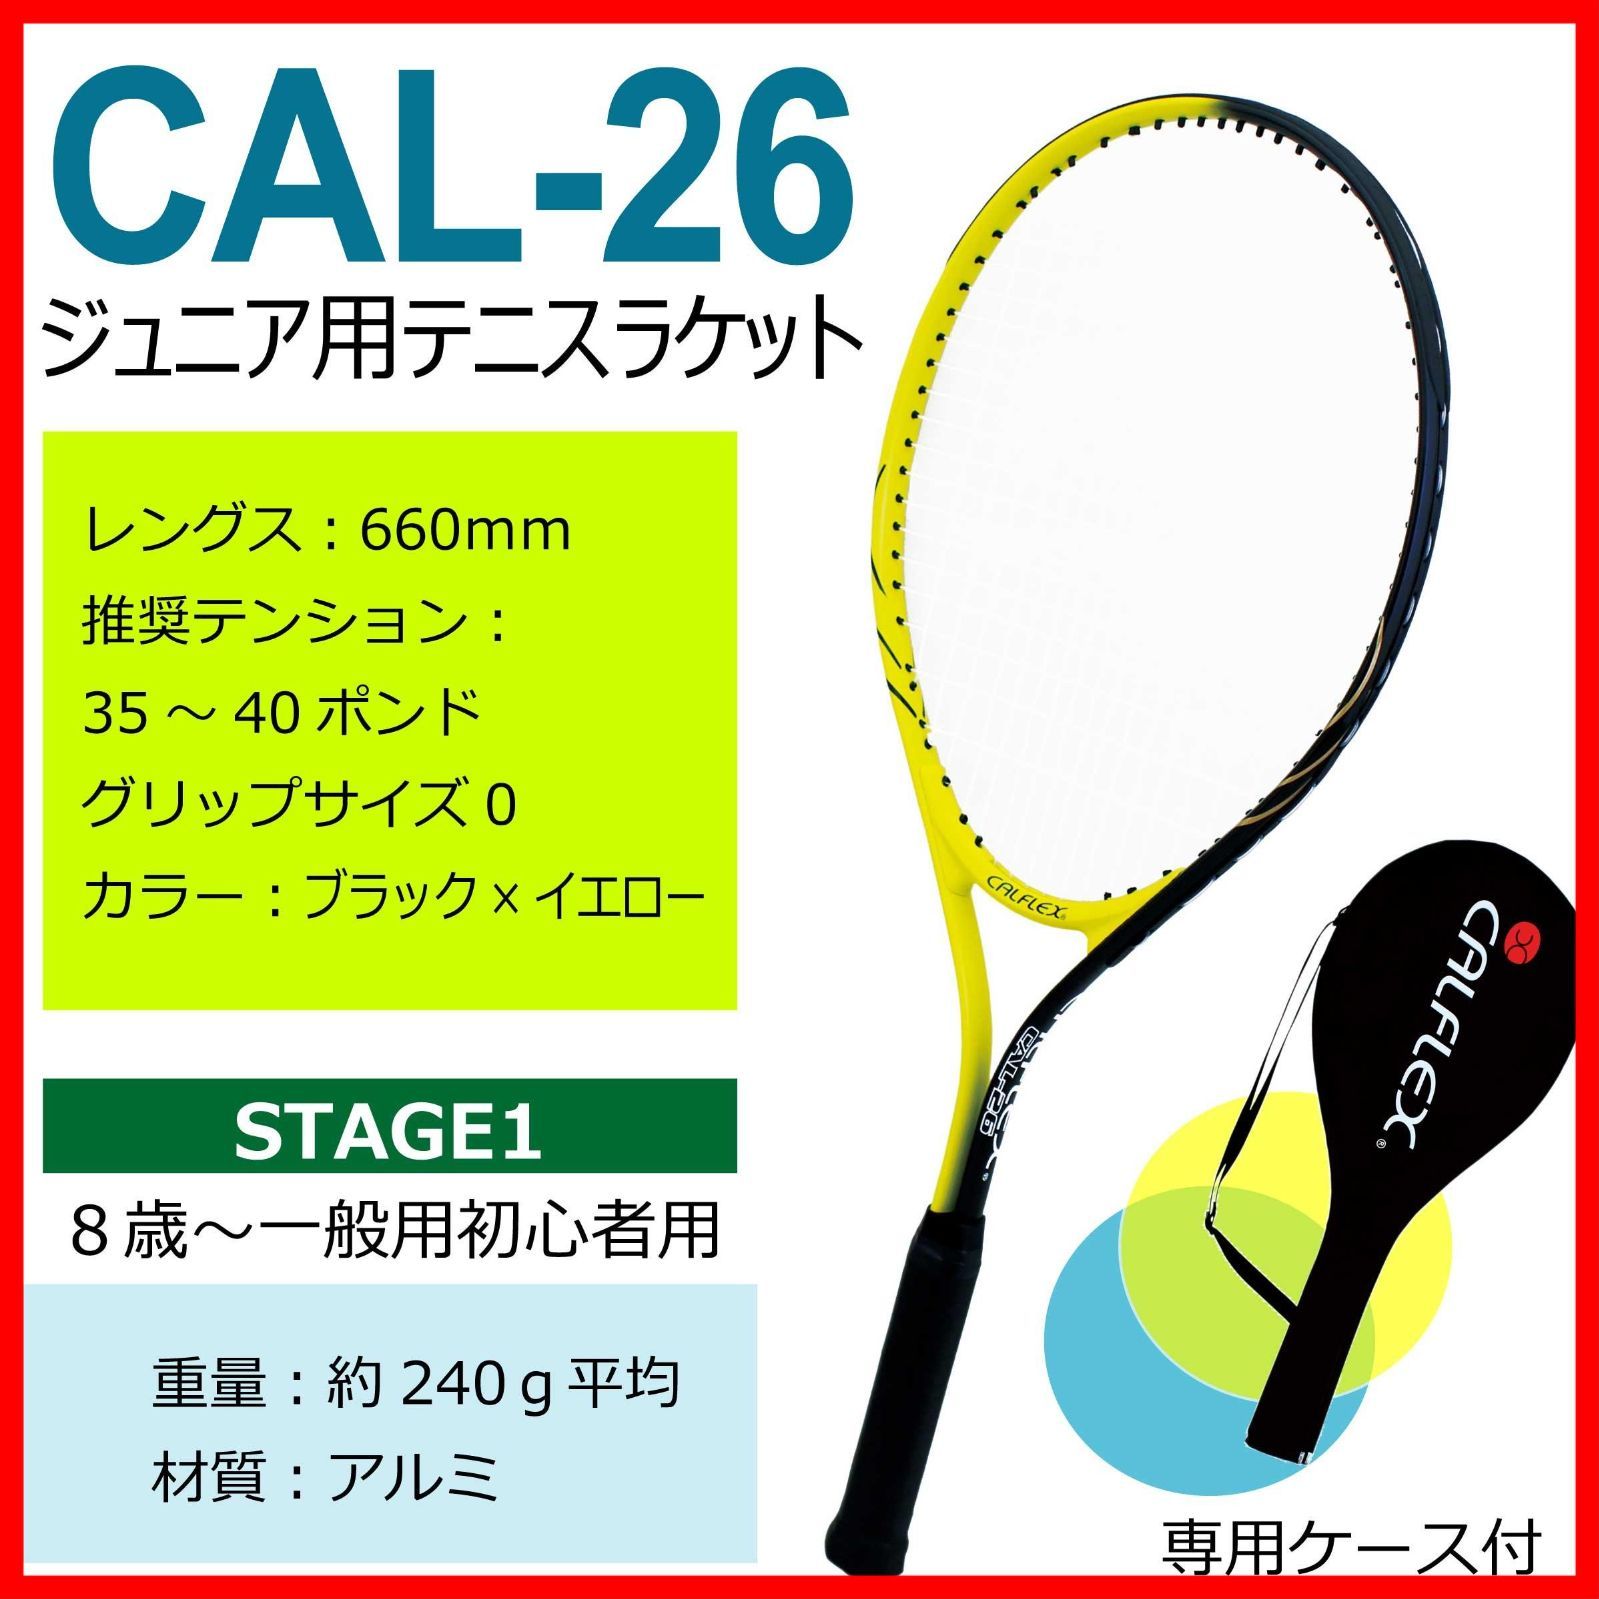 サクライ貿易(SAKURAI) CALFLEX(カルフレックス) テニス 硬式 テニストレーナー TT-11